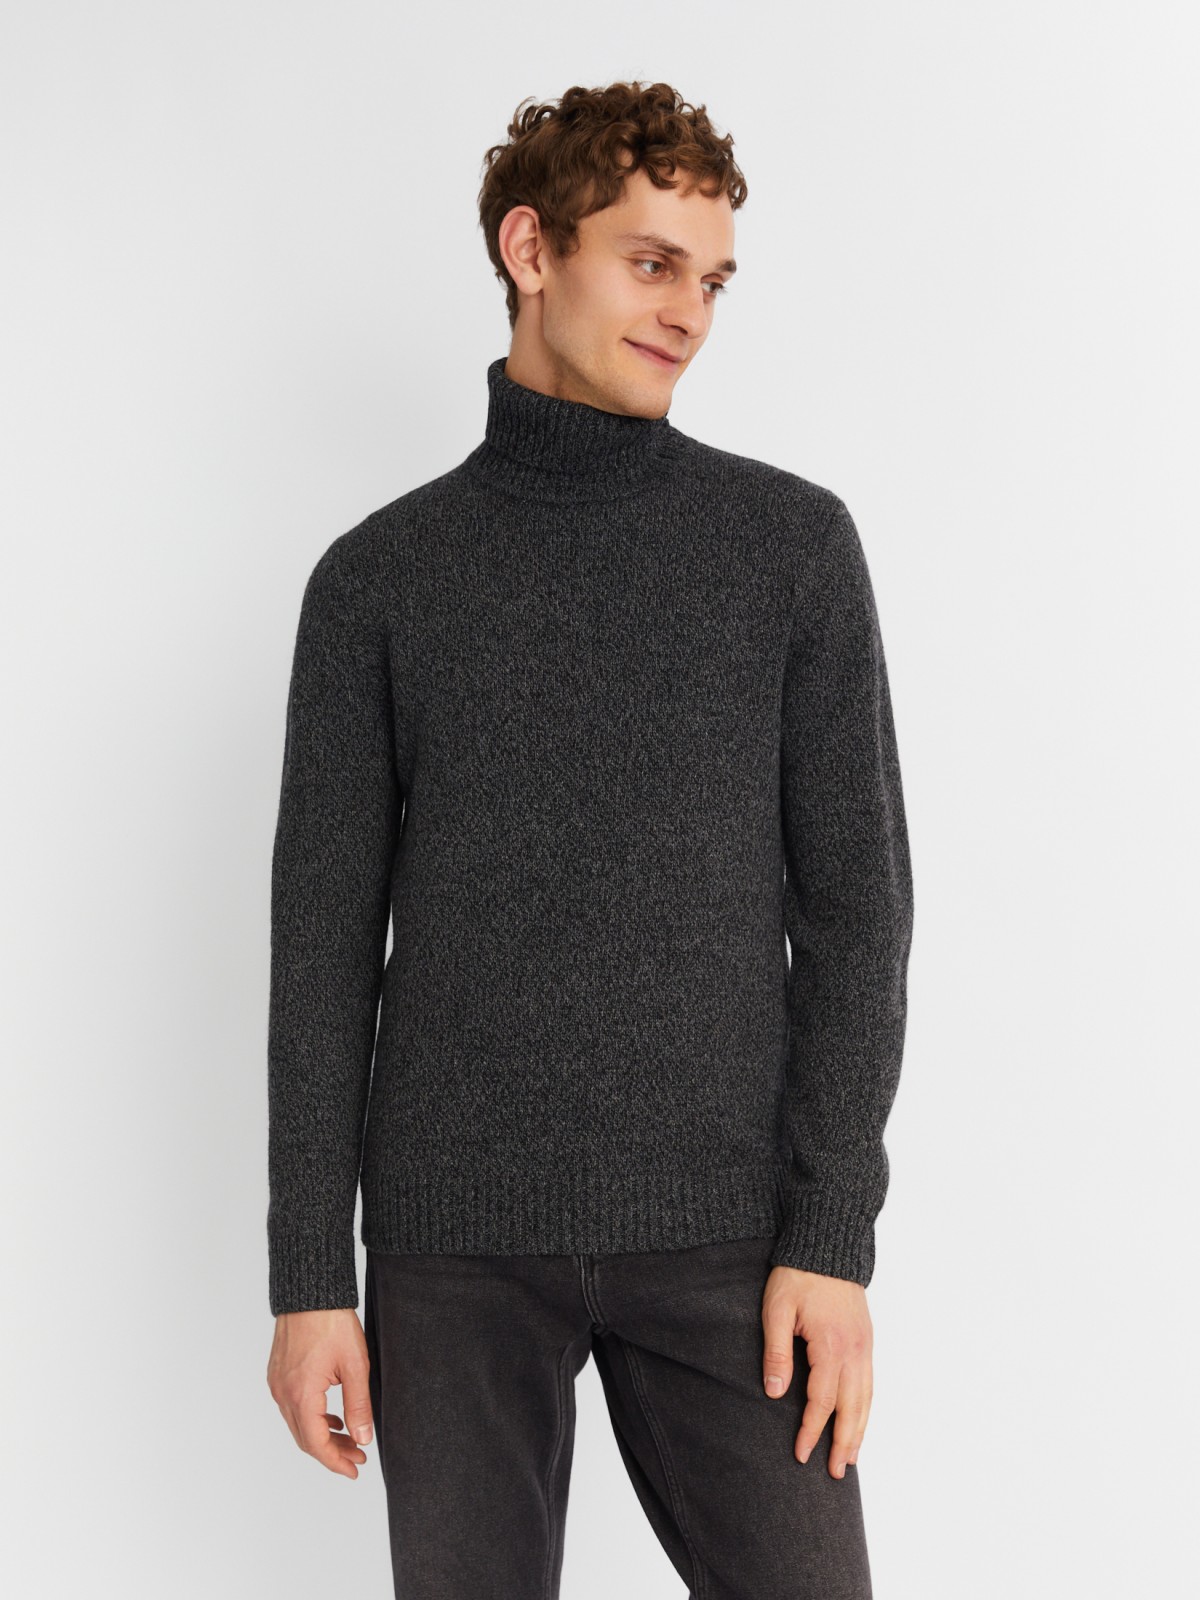 Вязаная шерстяная водолазка-свитер с горлом zolla темно-серого цвета